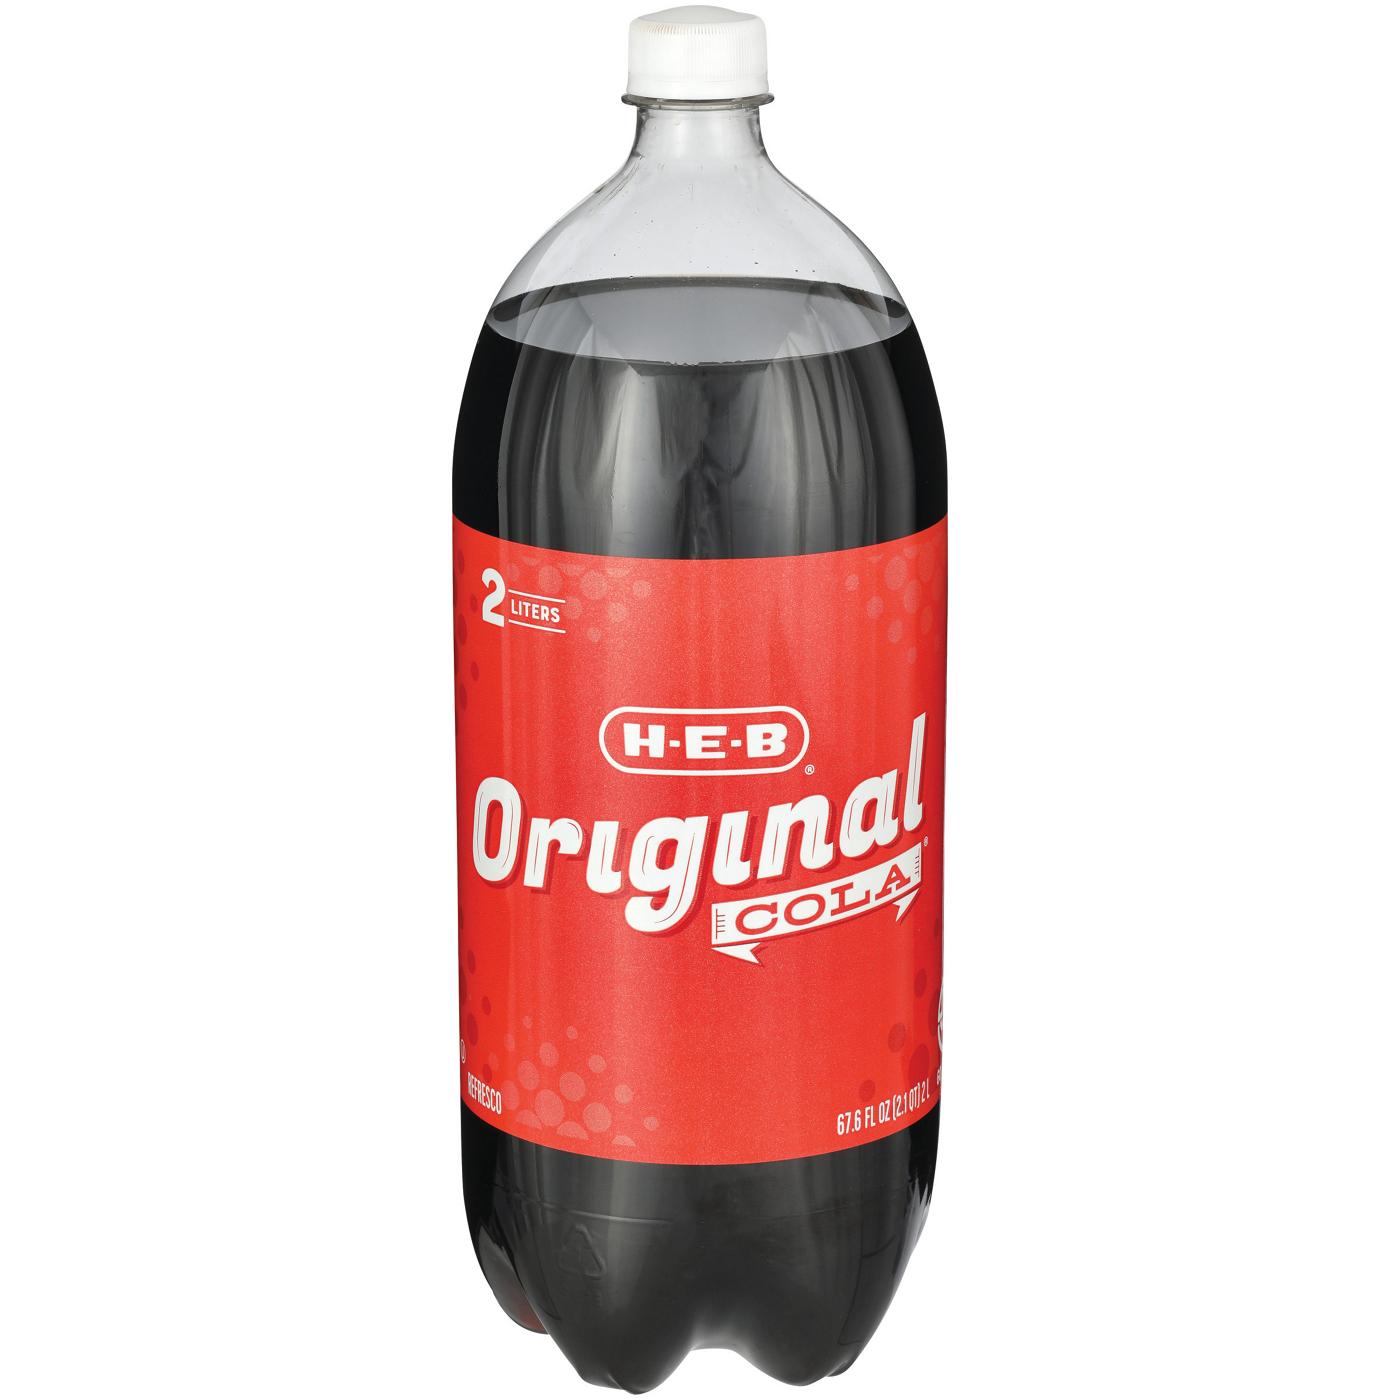 H-E-B Original Cola Soda; image 1 of 2